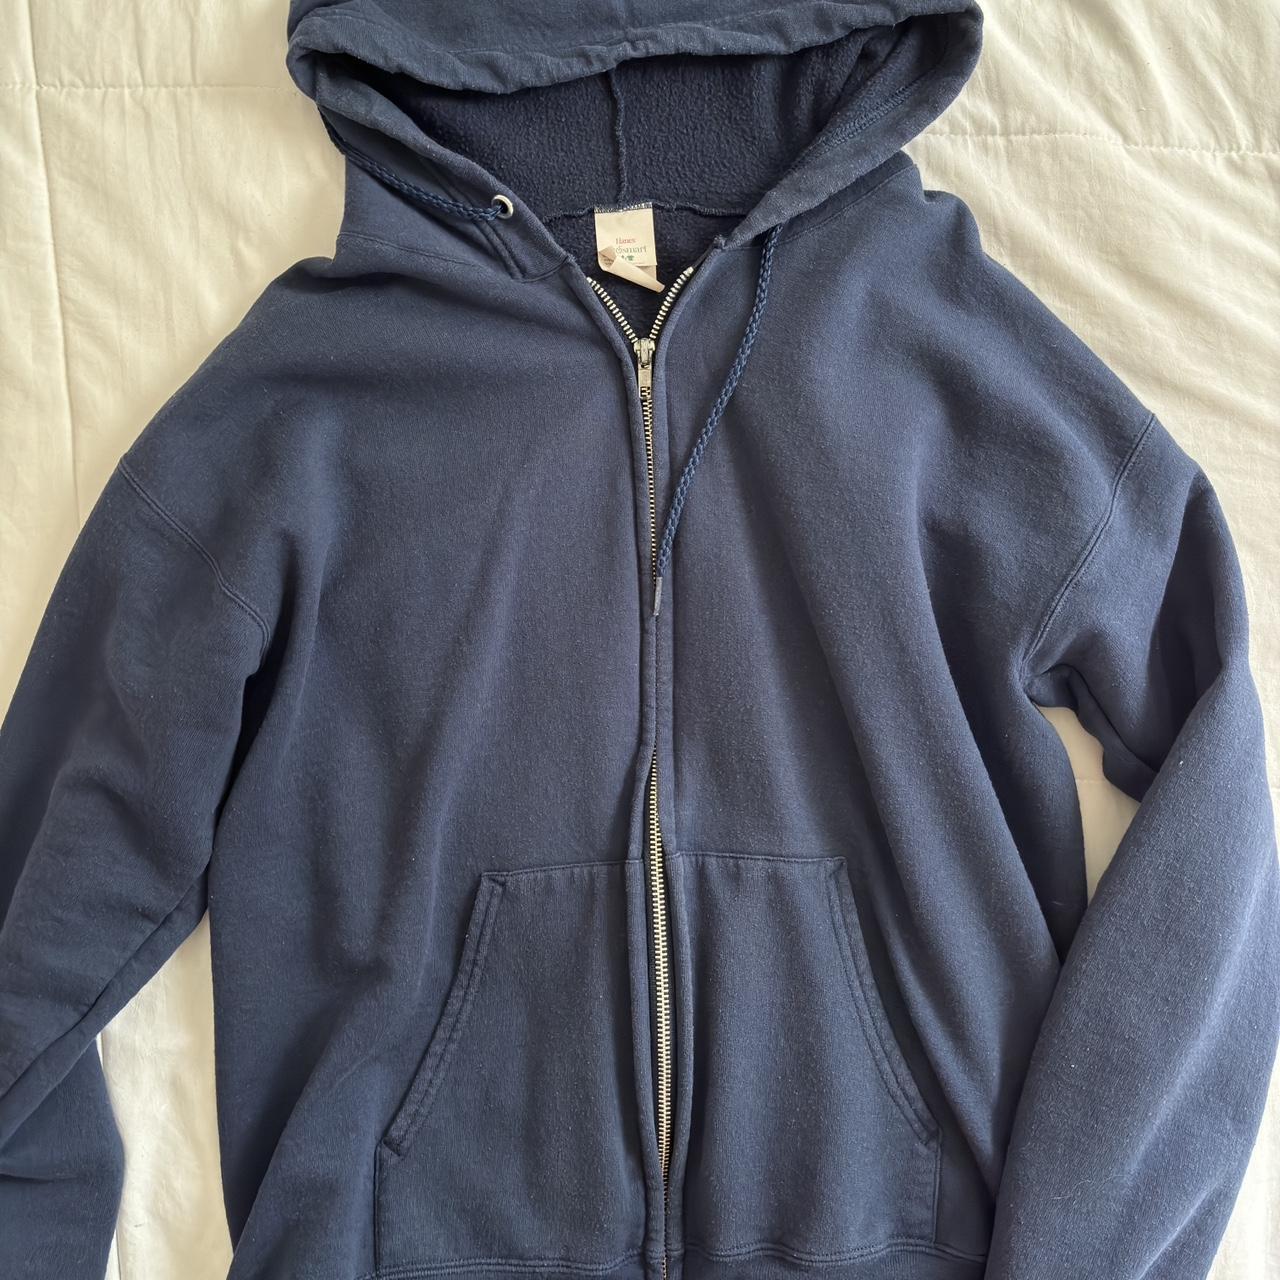 dark blue zip up hoodie 🌷 bit faded - Depop